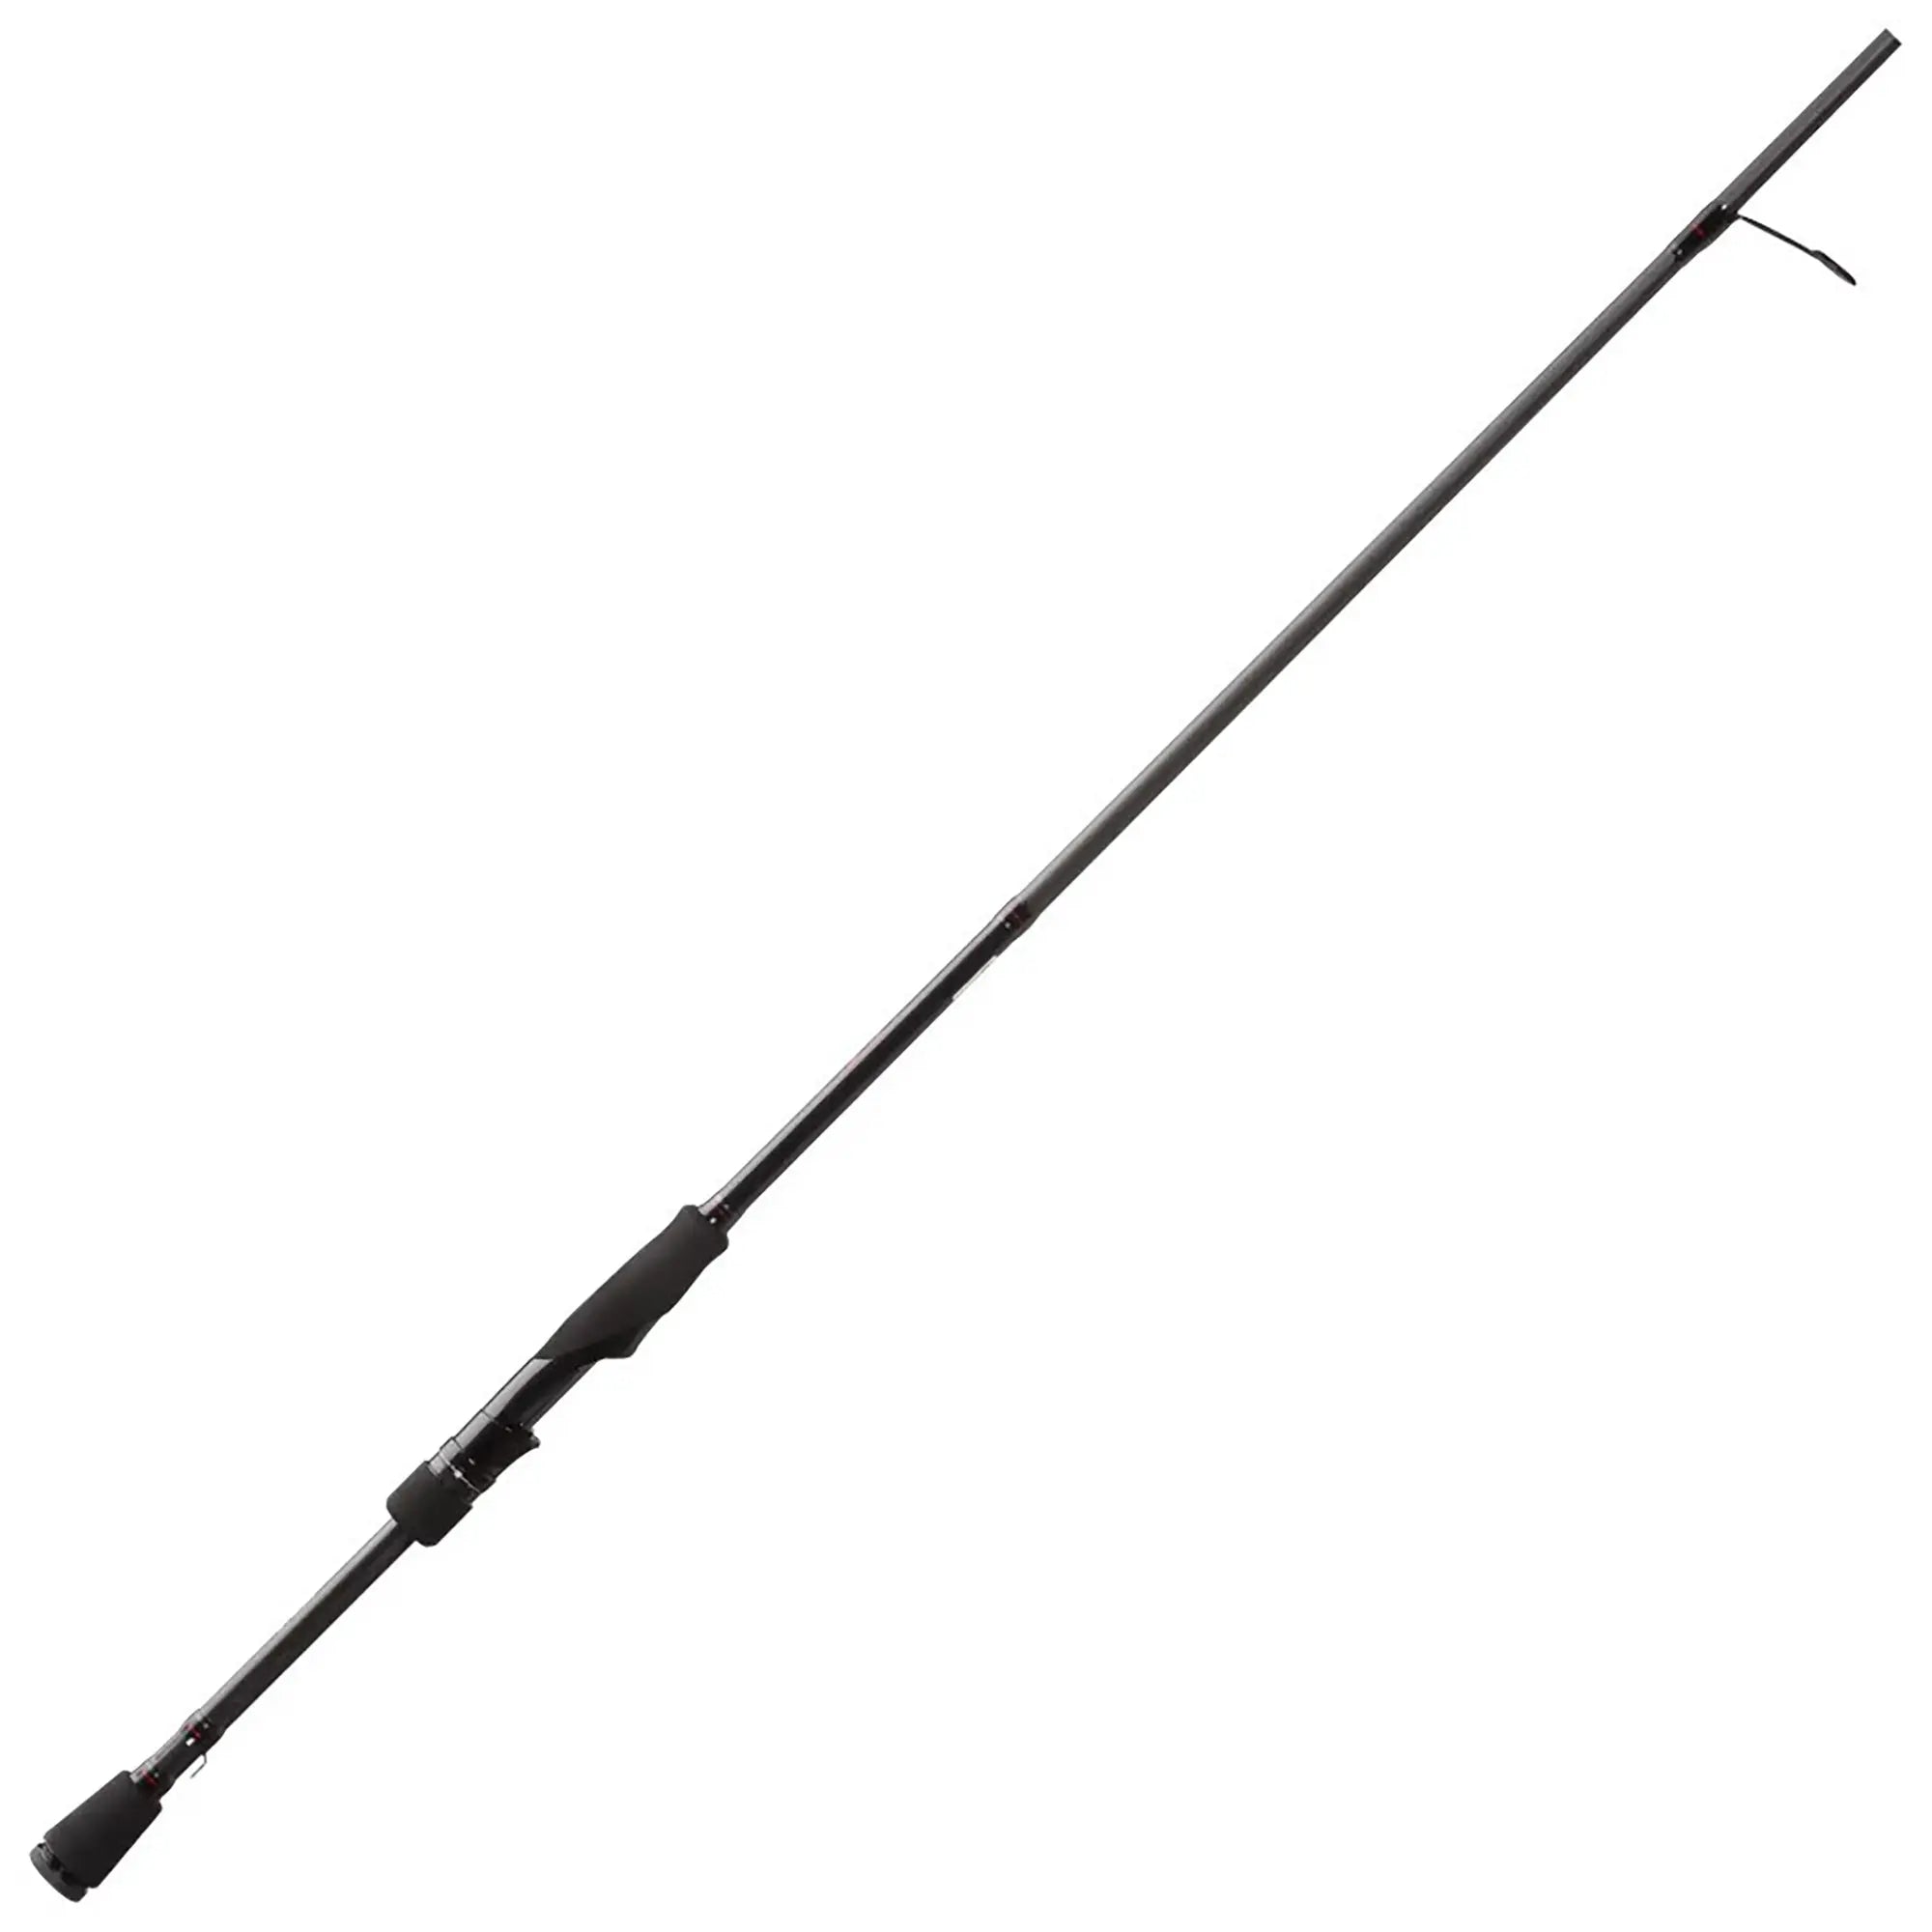 13 Fishing Meta Spinning Fishing Rod - 6'9" (Medium) 13 Fishing